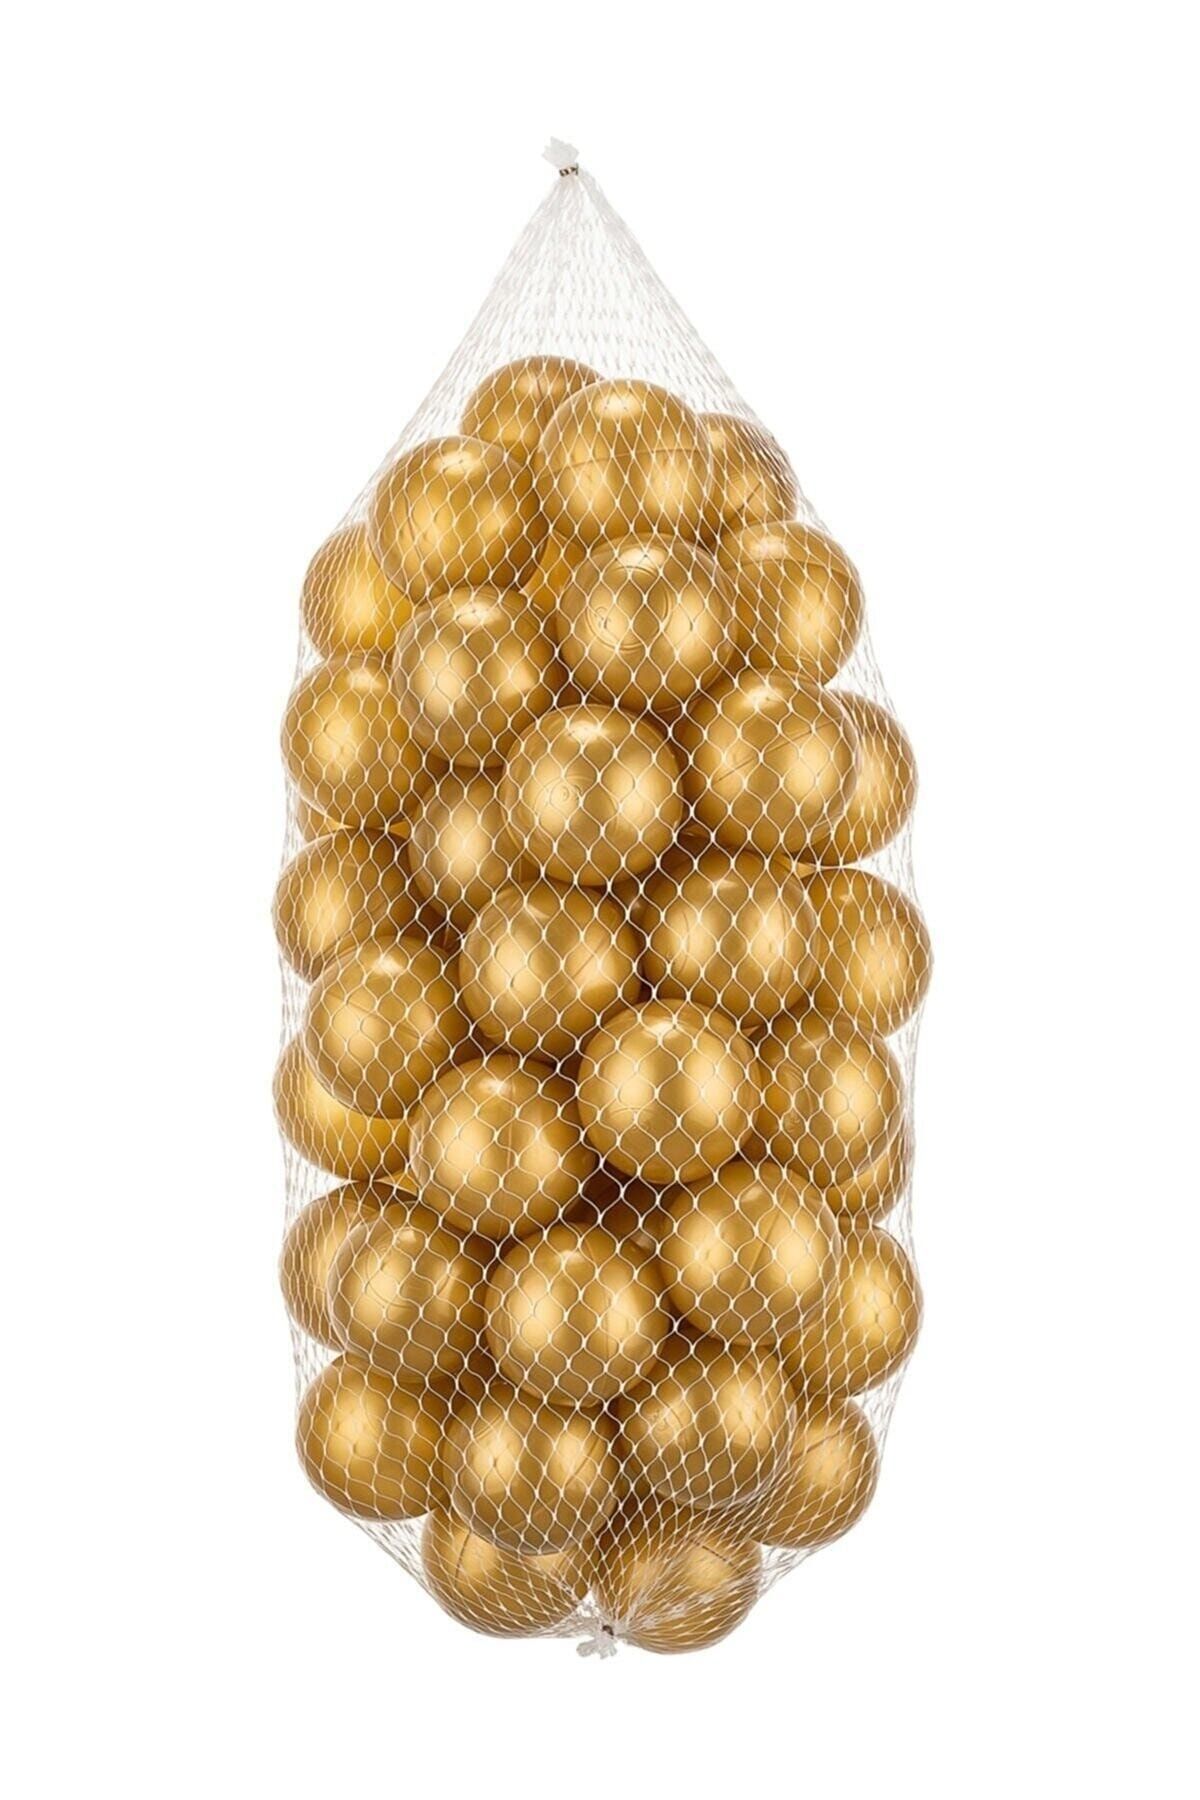 HEPİTOP Beren Toys Top Havuzu Topları, Oyun Havuzu Topları 7 Cm 50'li Filede Gold